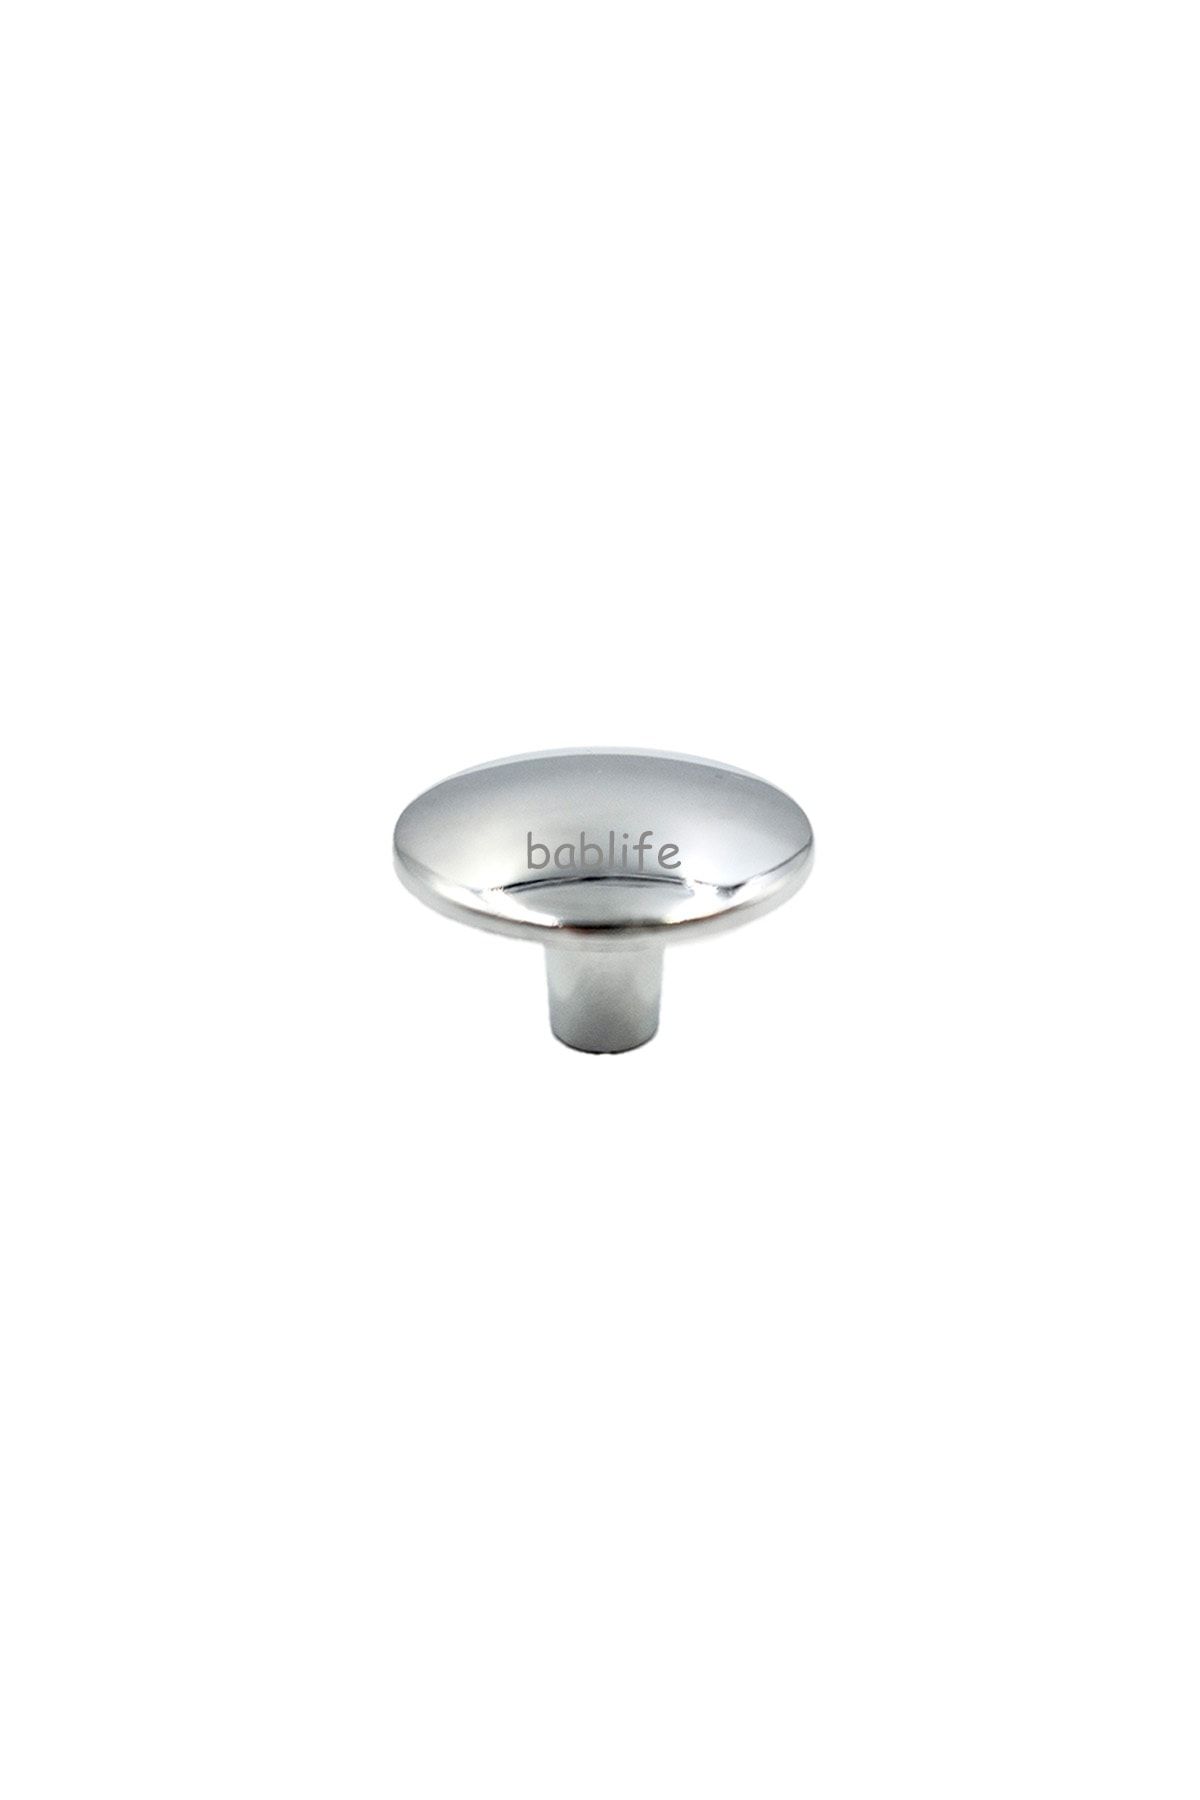 bablife Krom Düz Düğme 35mm Çapında Çekmece Dolap Mobilya Kulpları